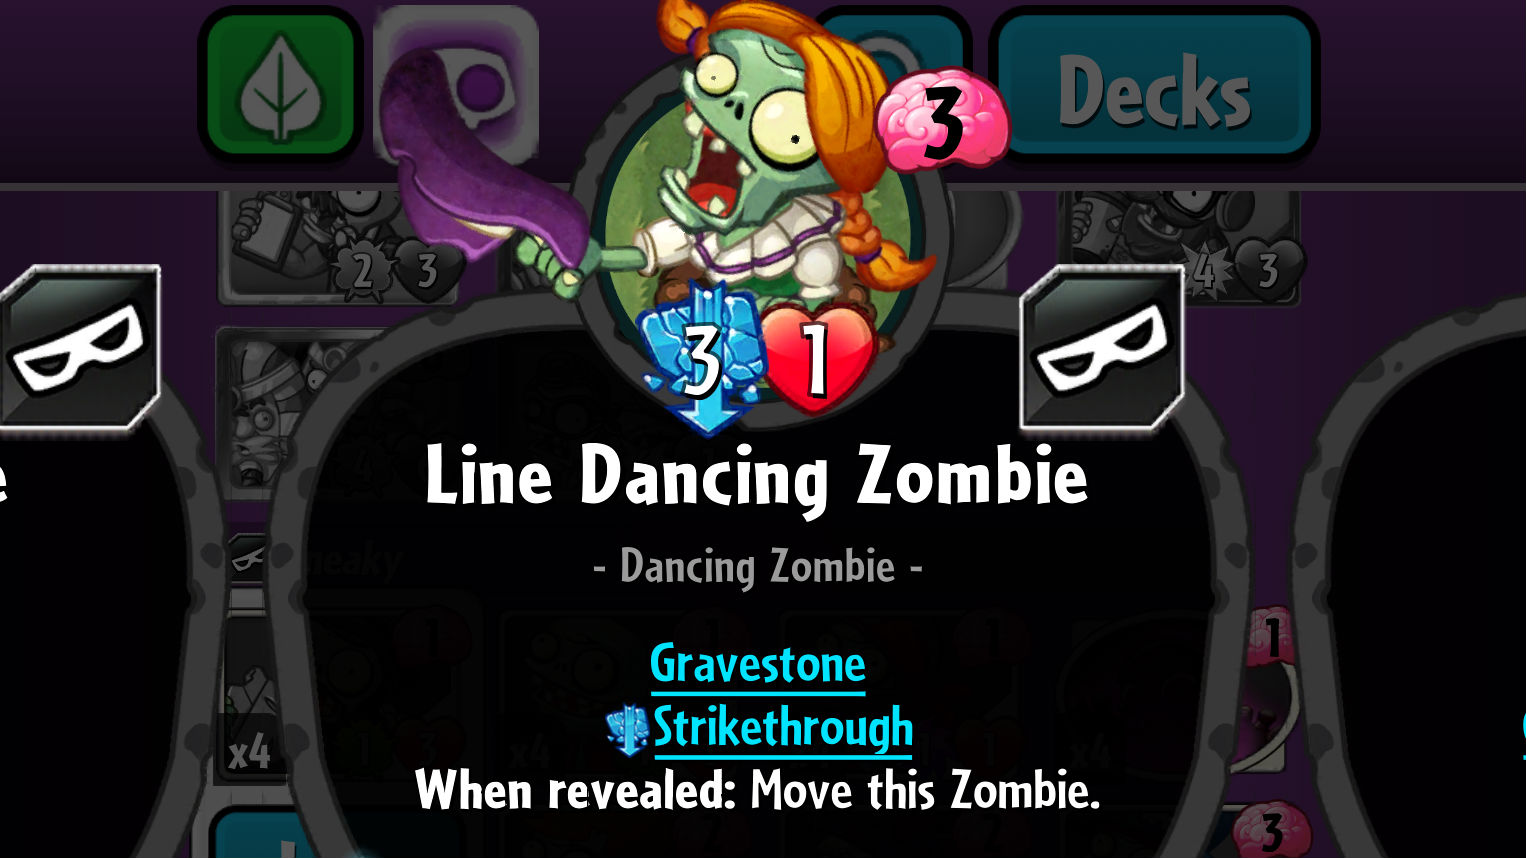 Plants vs. Zombies Heroes Line Dancing Zombie